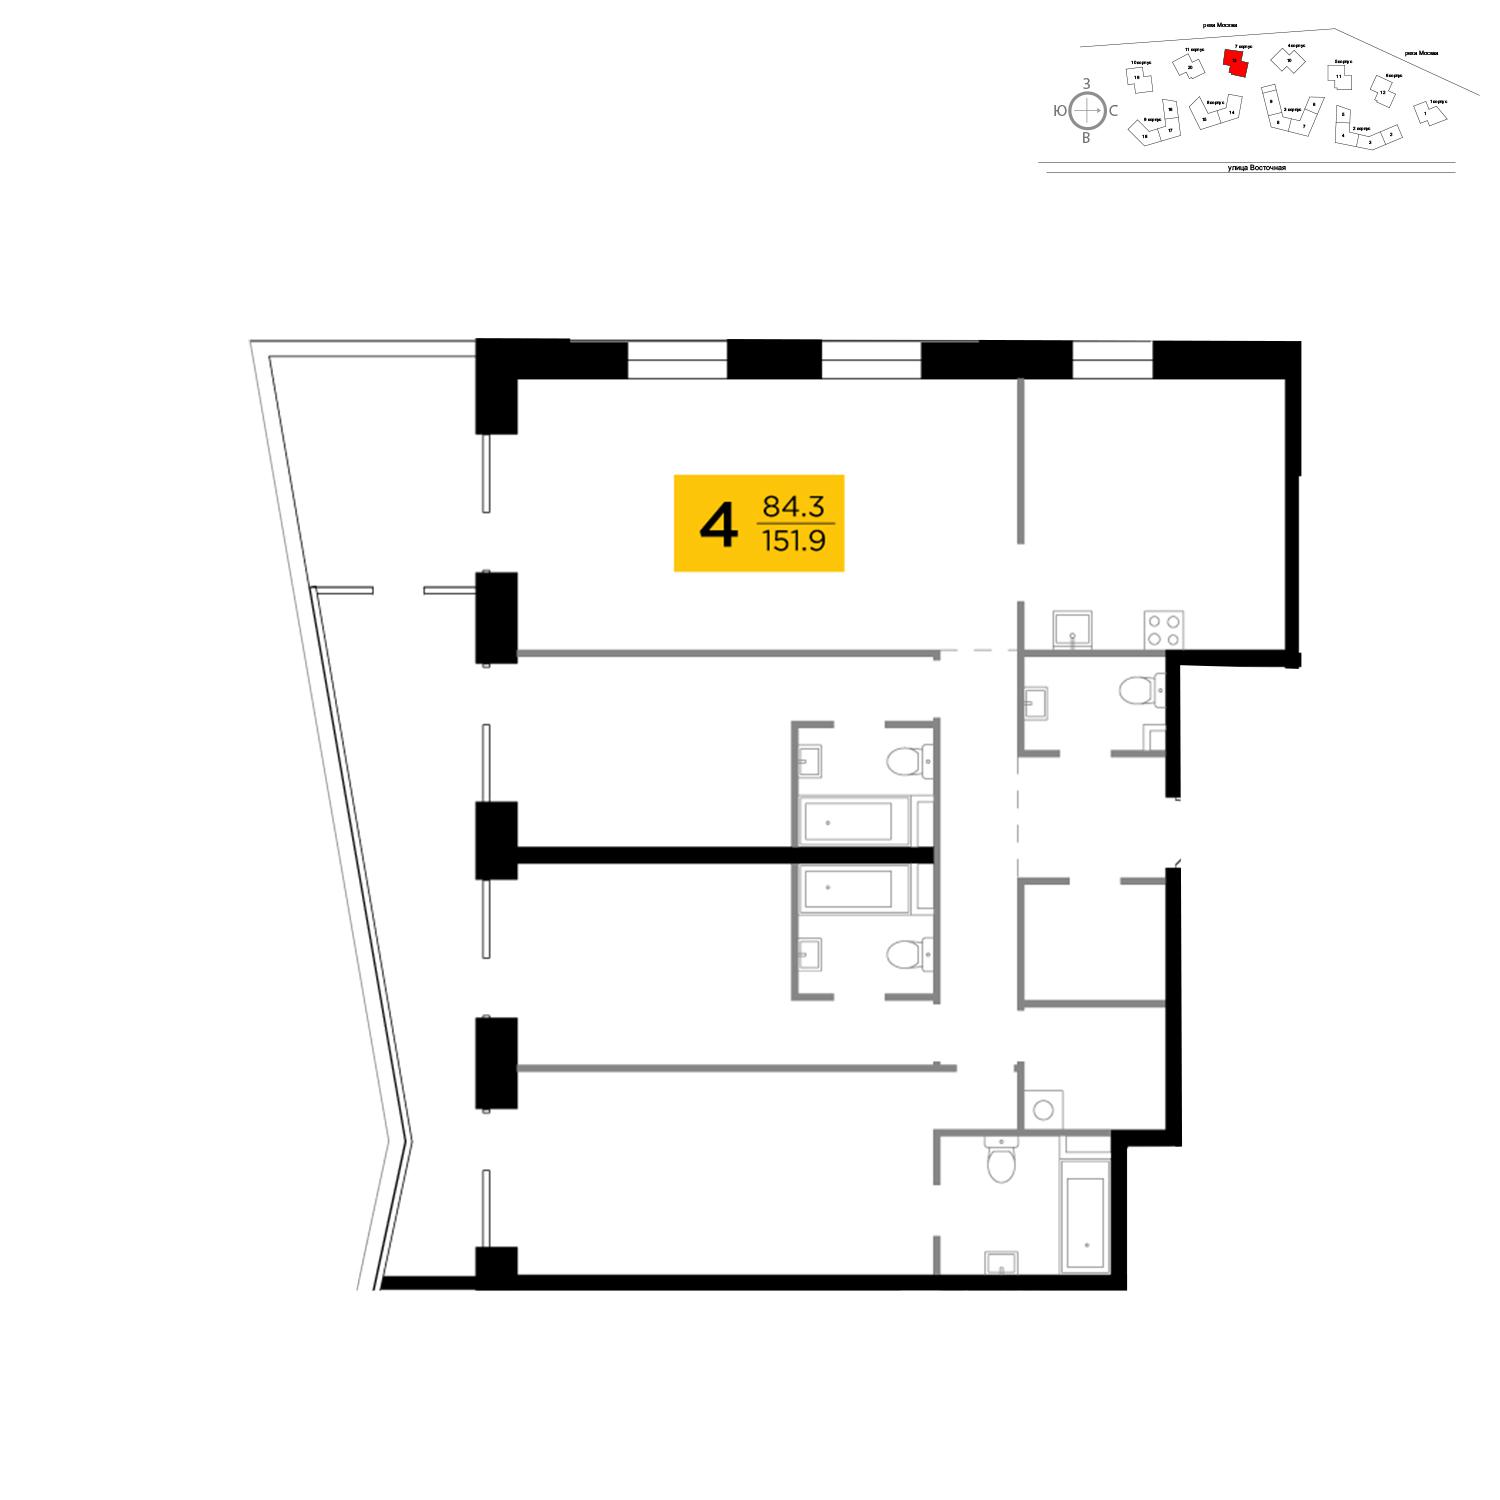 Продаётся 4-комнатная квартира в новостройке 151.9 кв.м. этаж 13/19 за 67 058 247 руб 